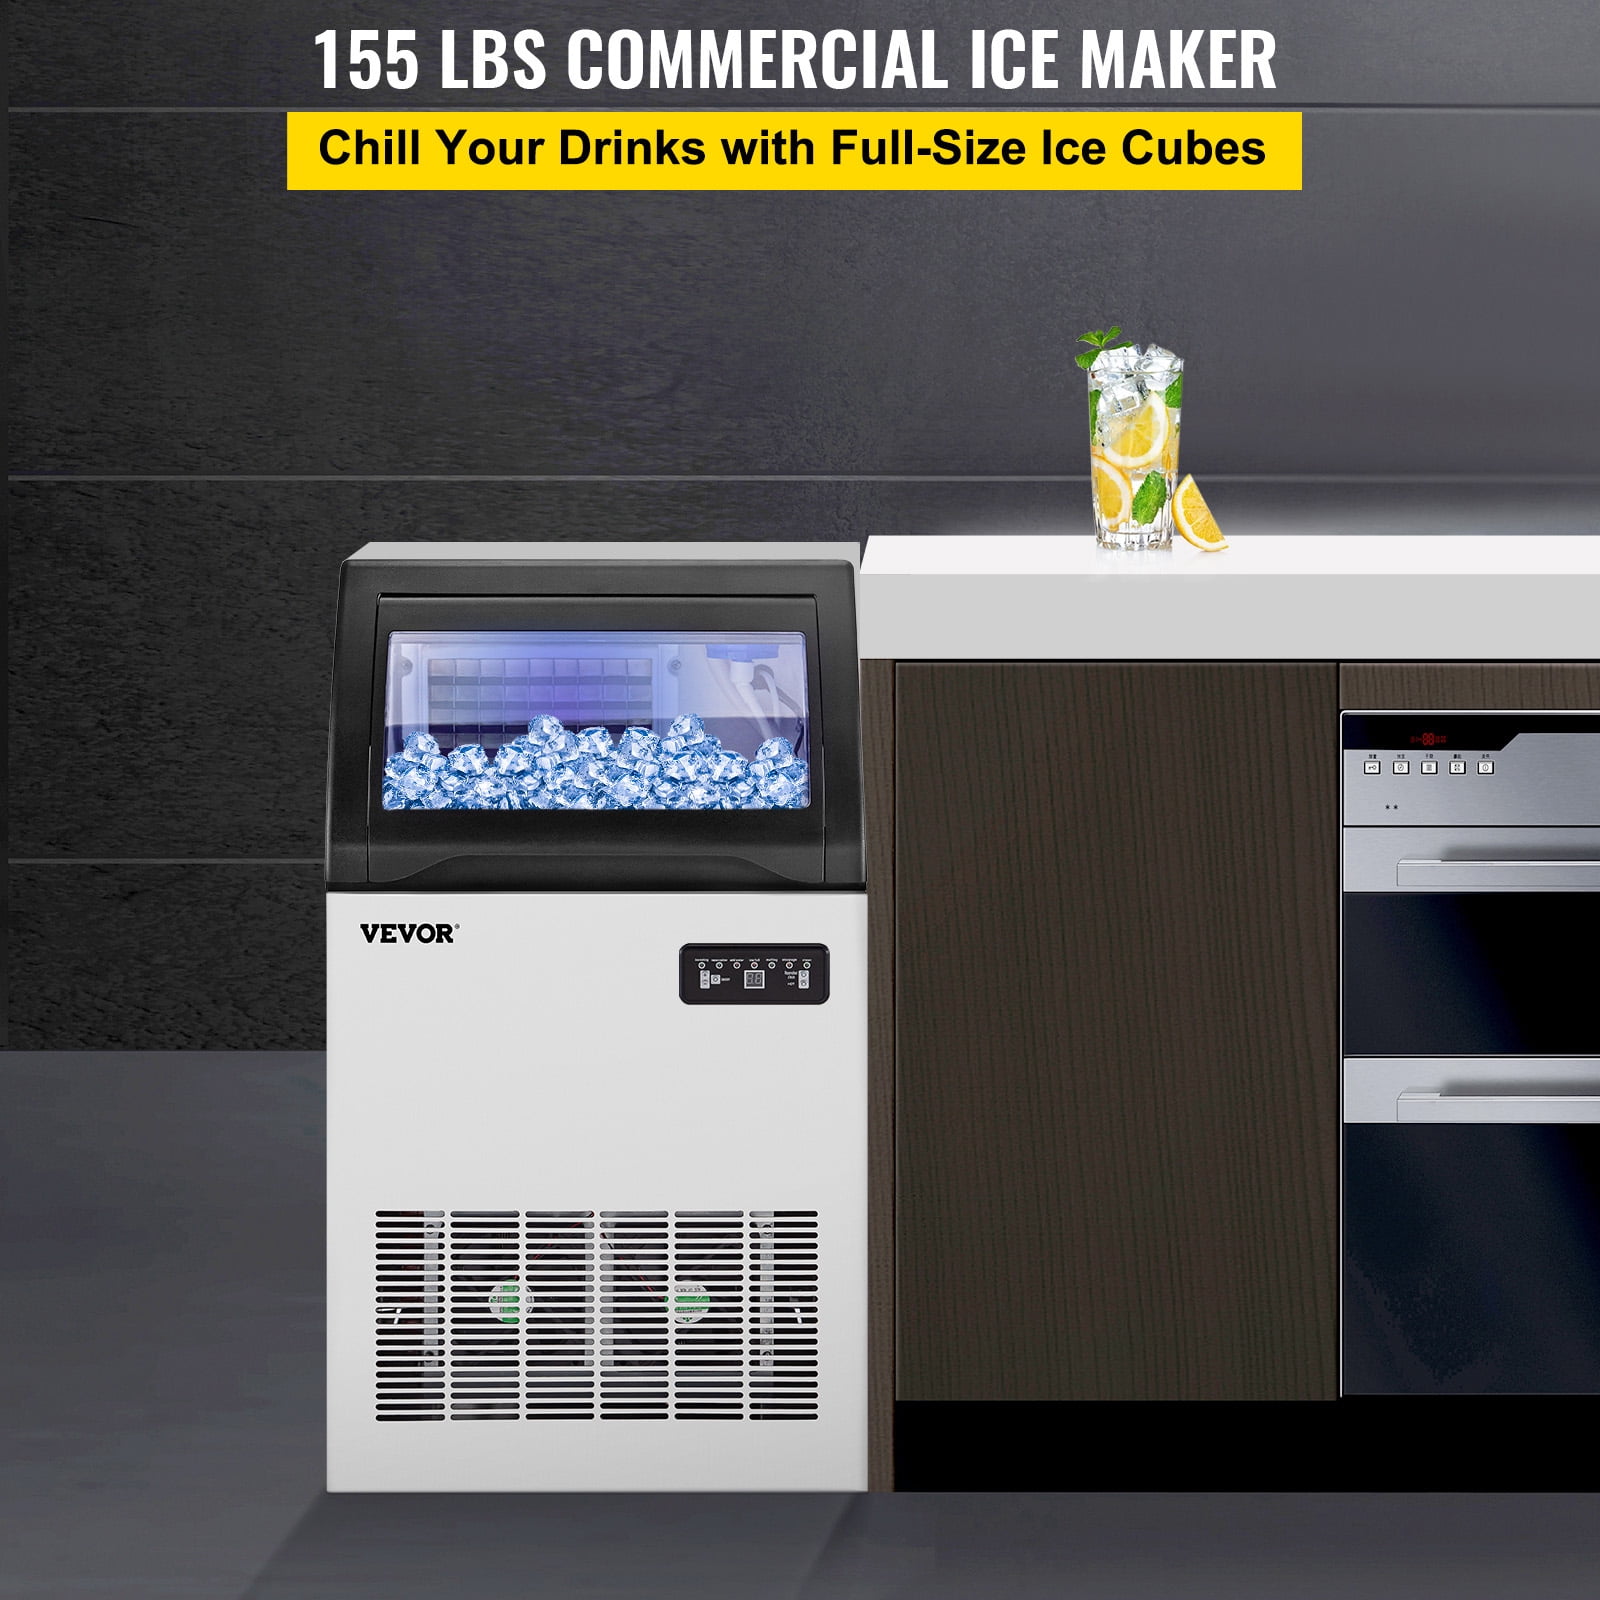 110V USA Ice Maker Home Ice Making Machine Cheap Price - China